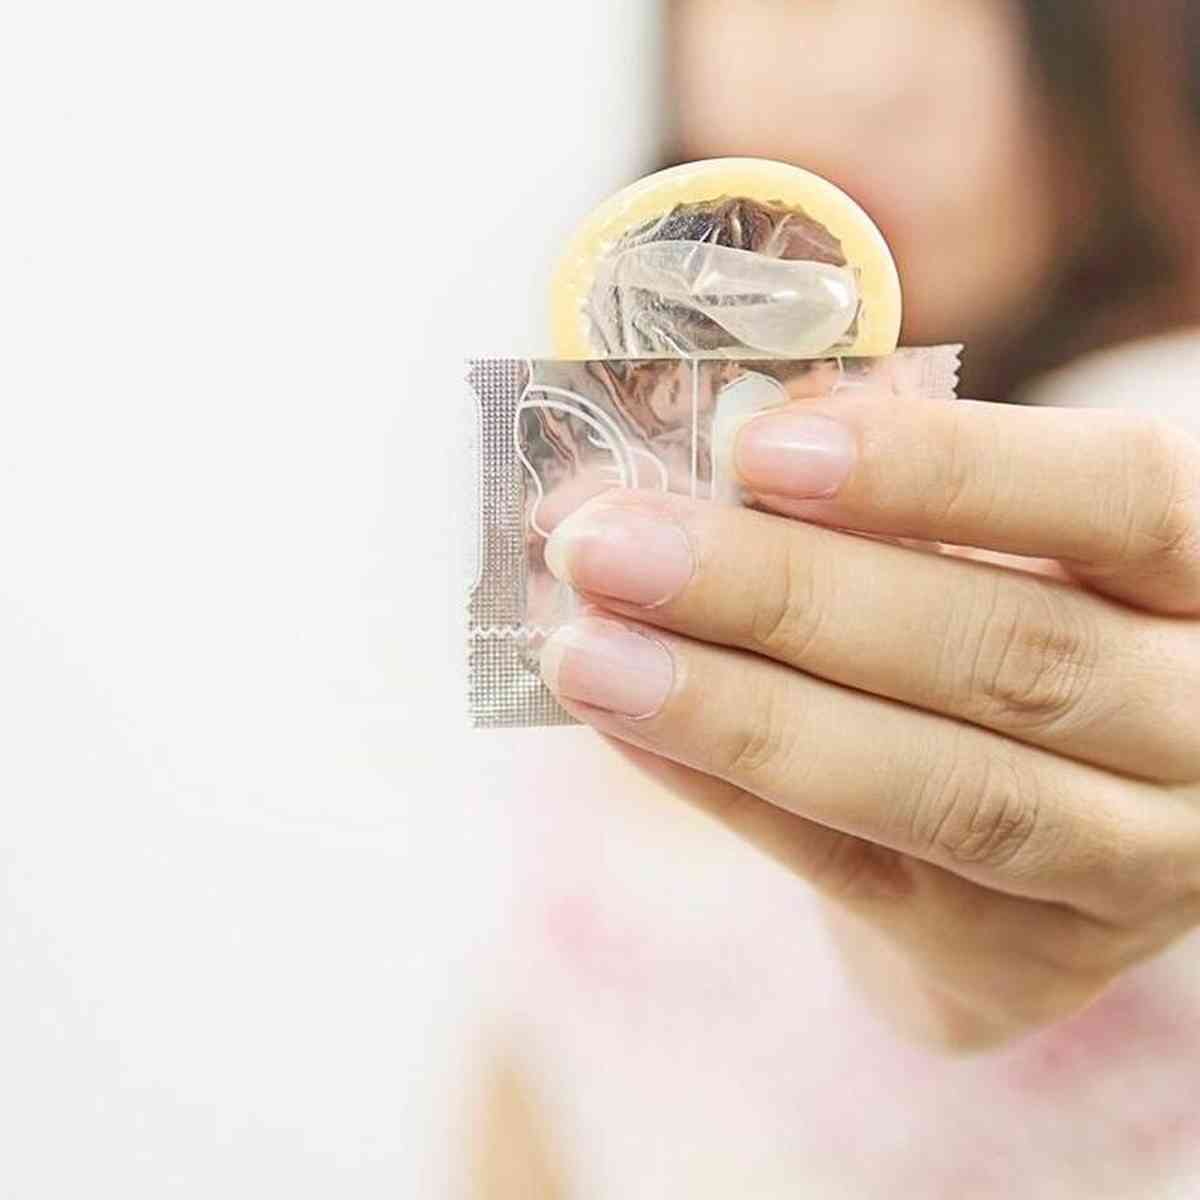 Adolescentes usam menos preservativos nas relações, segundo IBGE - Saúde -  Estado de Minas